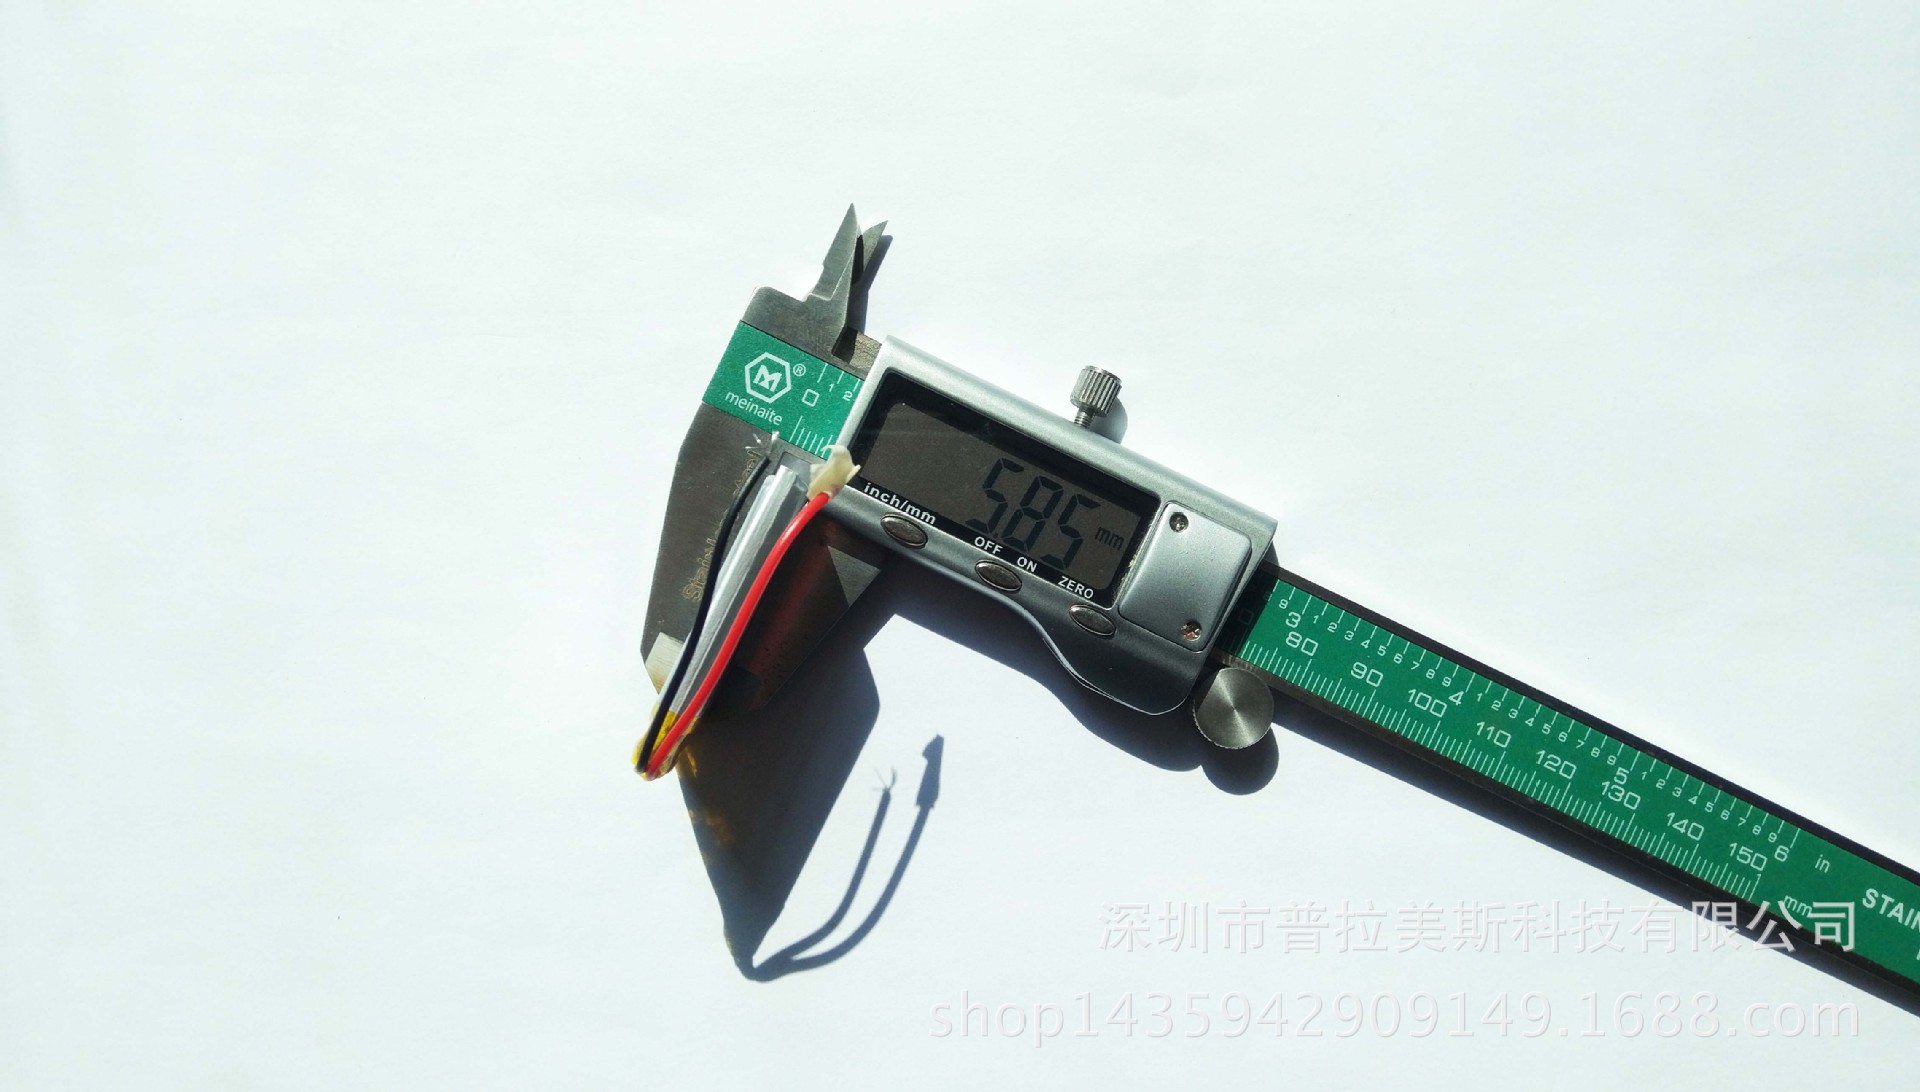 可充电聚合物锂电池603040/600MAH 美容仪按摩器蓝牙音箱手柄电池示例图6